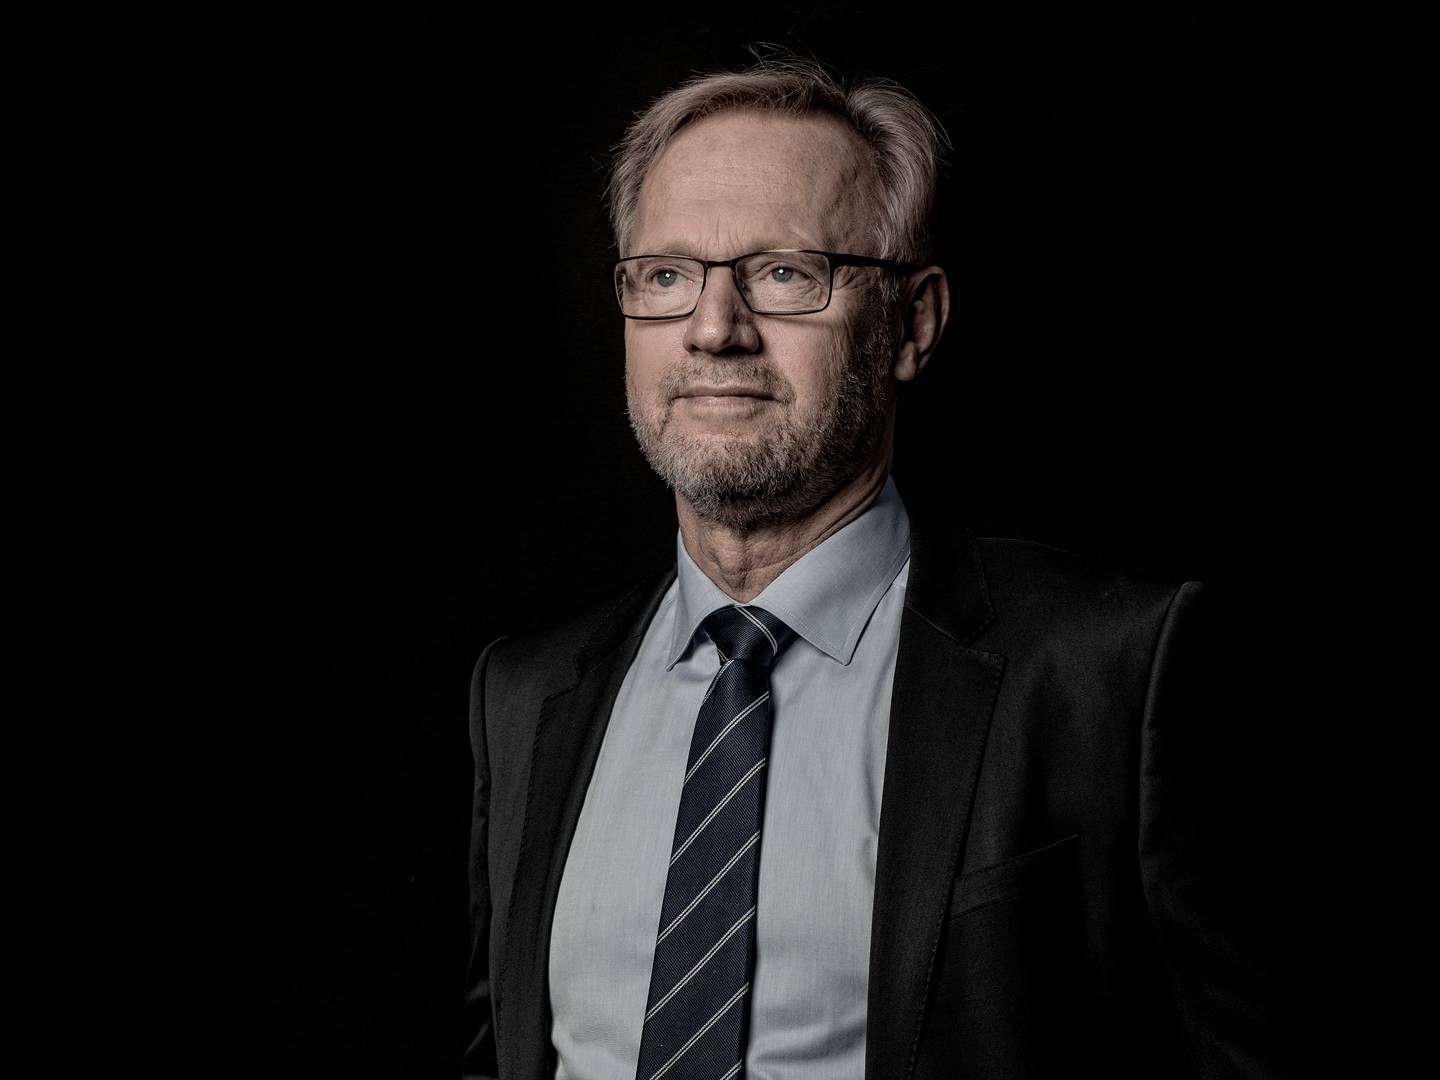 Anders Dam retter hård kritik af Nykredit for at kommunikere over stregen. | Photo: Casper Dalhoff